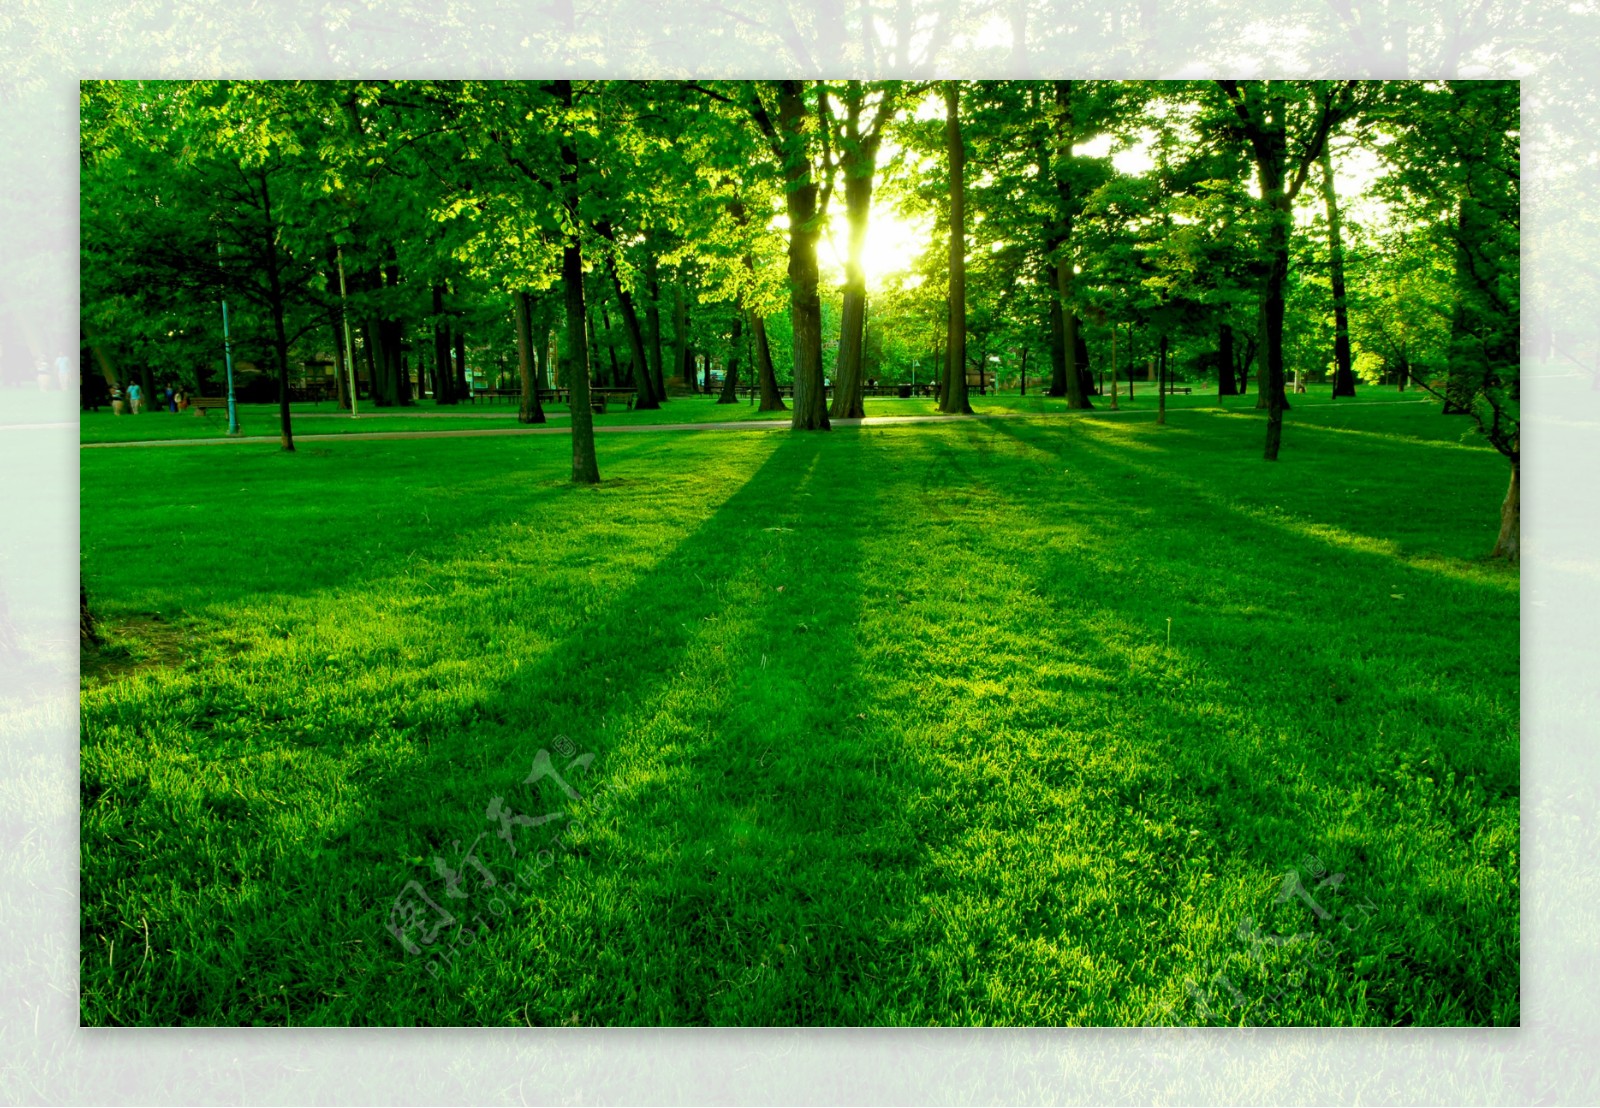 绿色树木草地风景图片